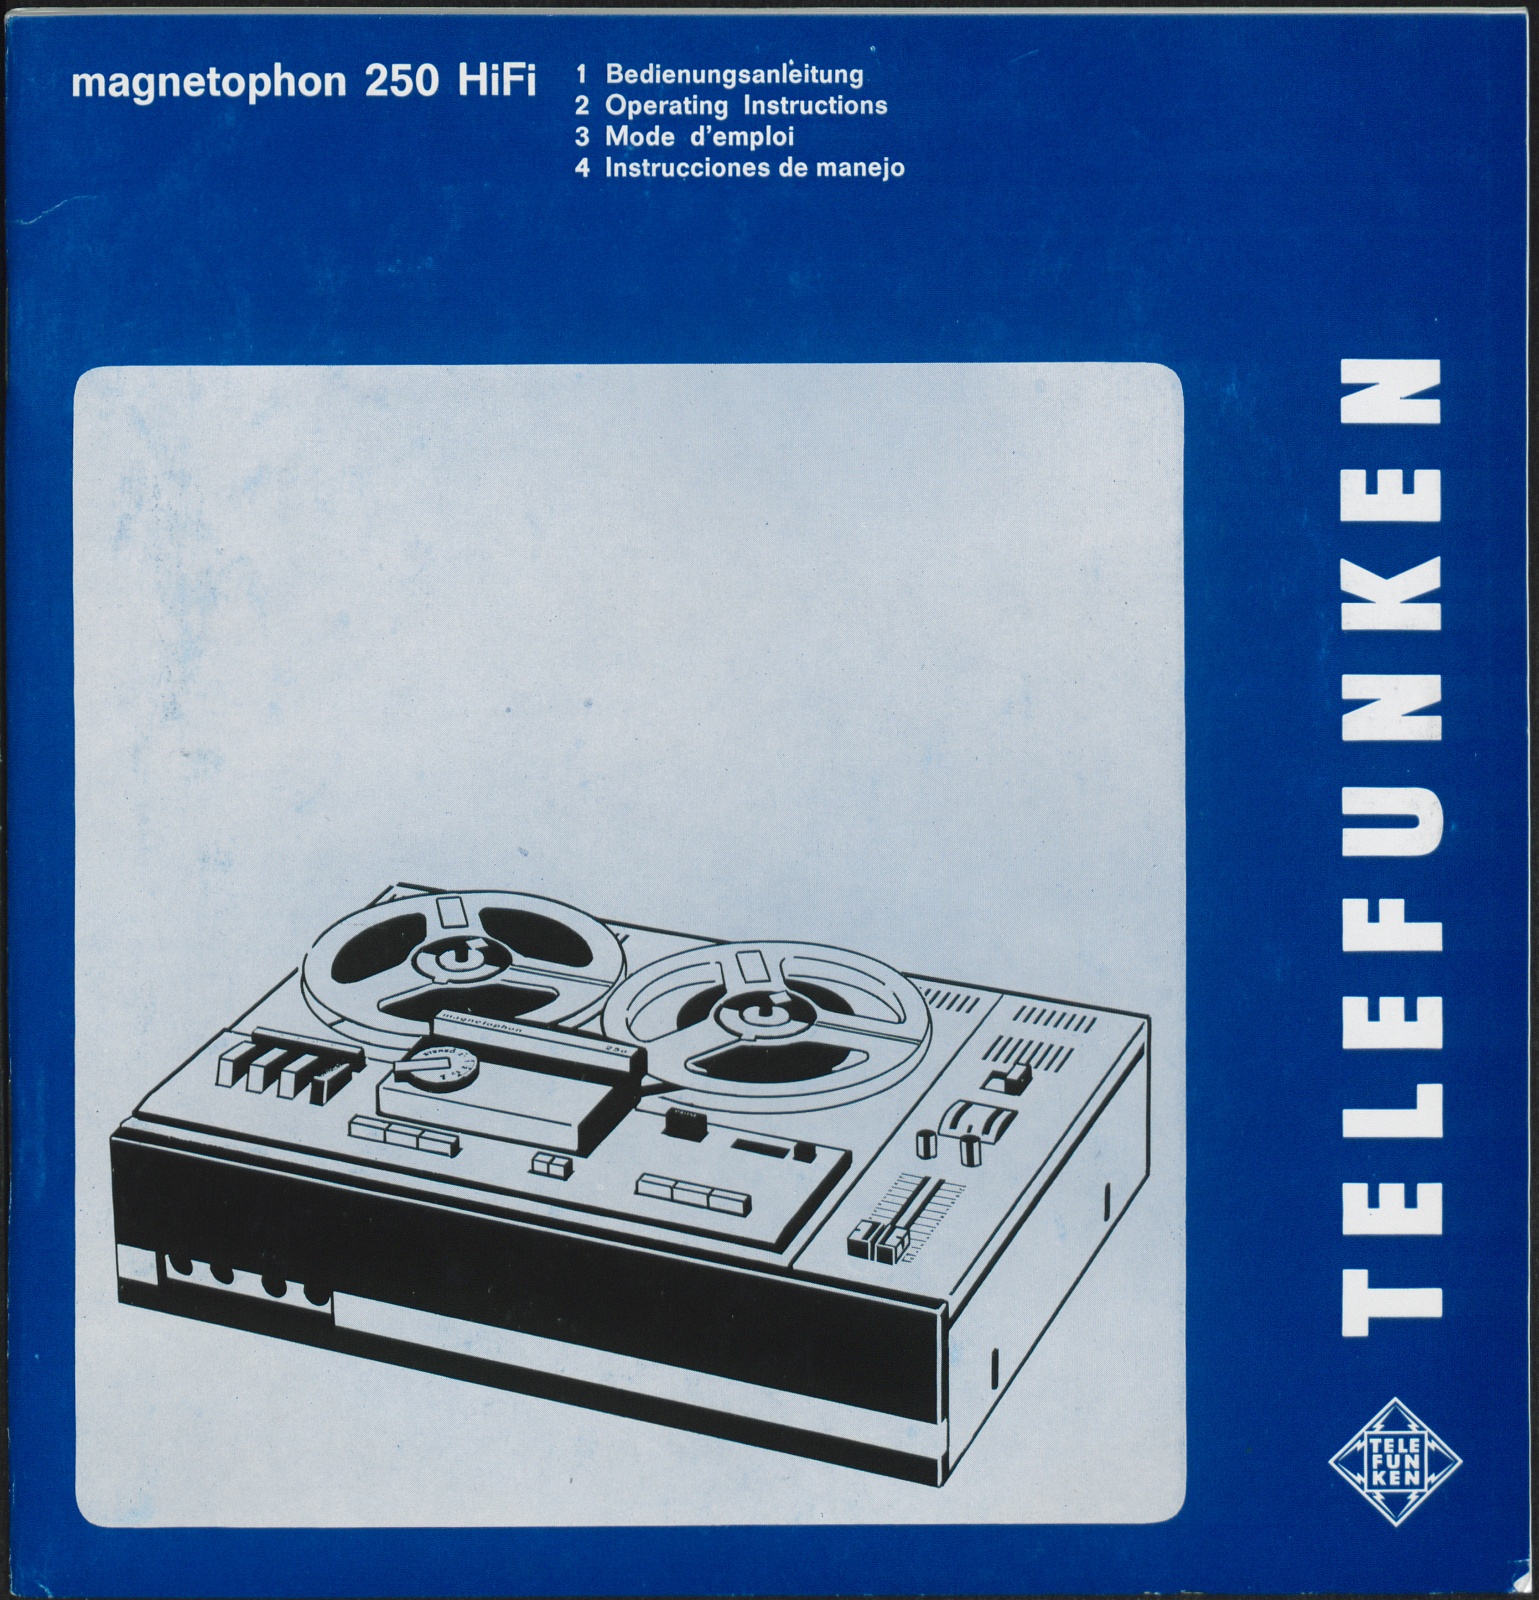 Bedienungsanleitung: Bedienungsanleitung Telefunken magnetophon 250 HiFi (Stiftung Deutsches Technikmuseum Berlin CC0)